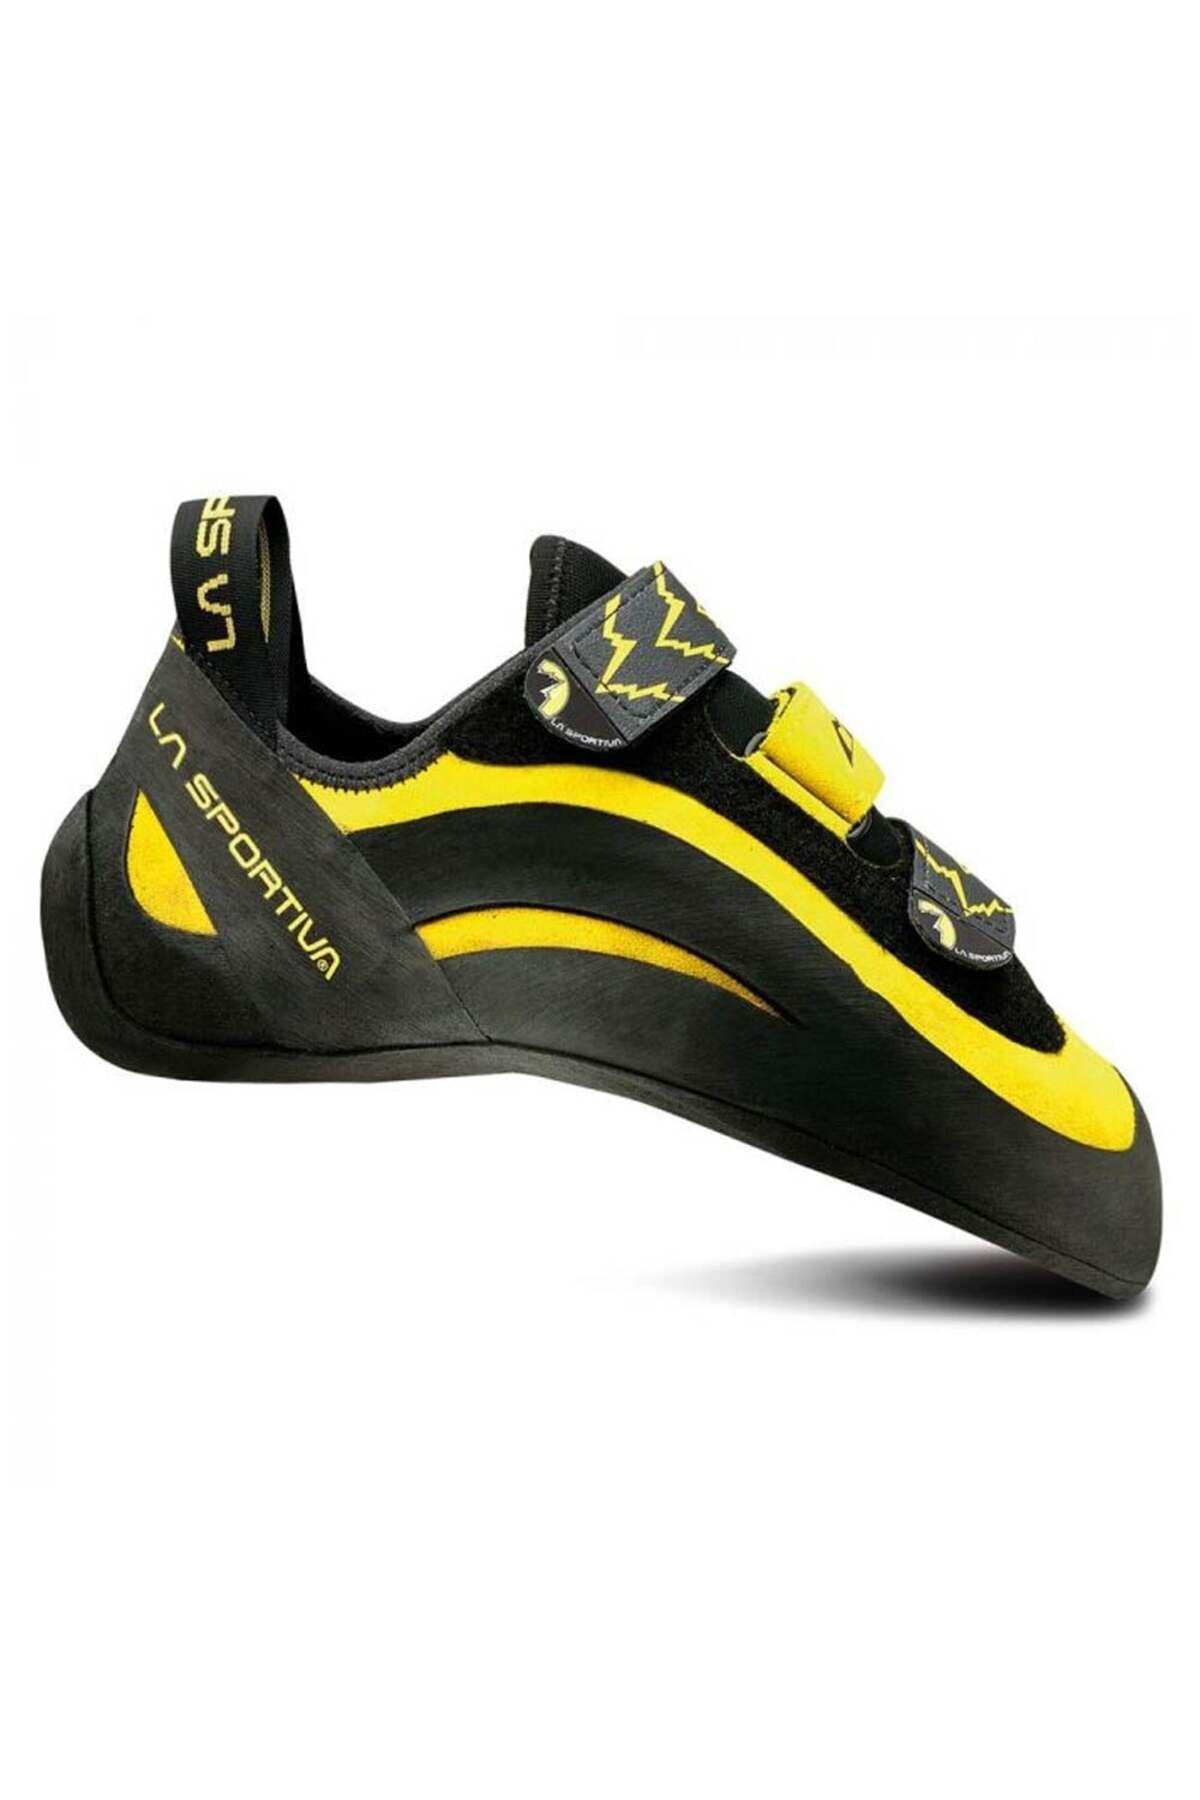 La Sportiva Miura Vs Unisex Tırmanış Ayakkabısı